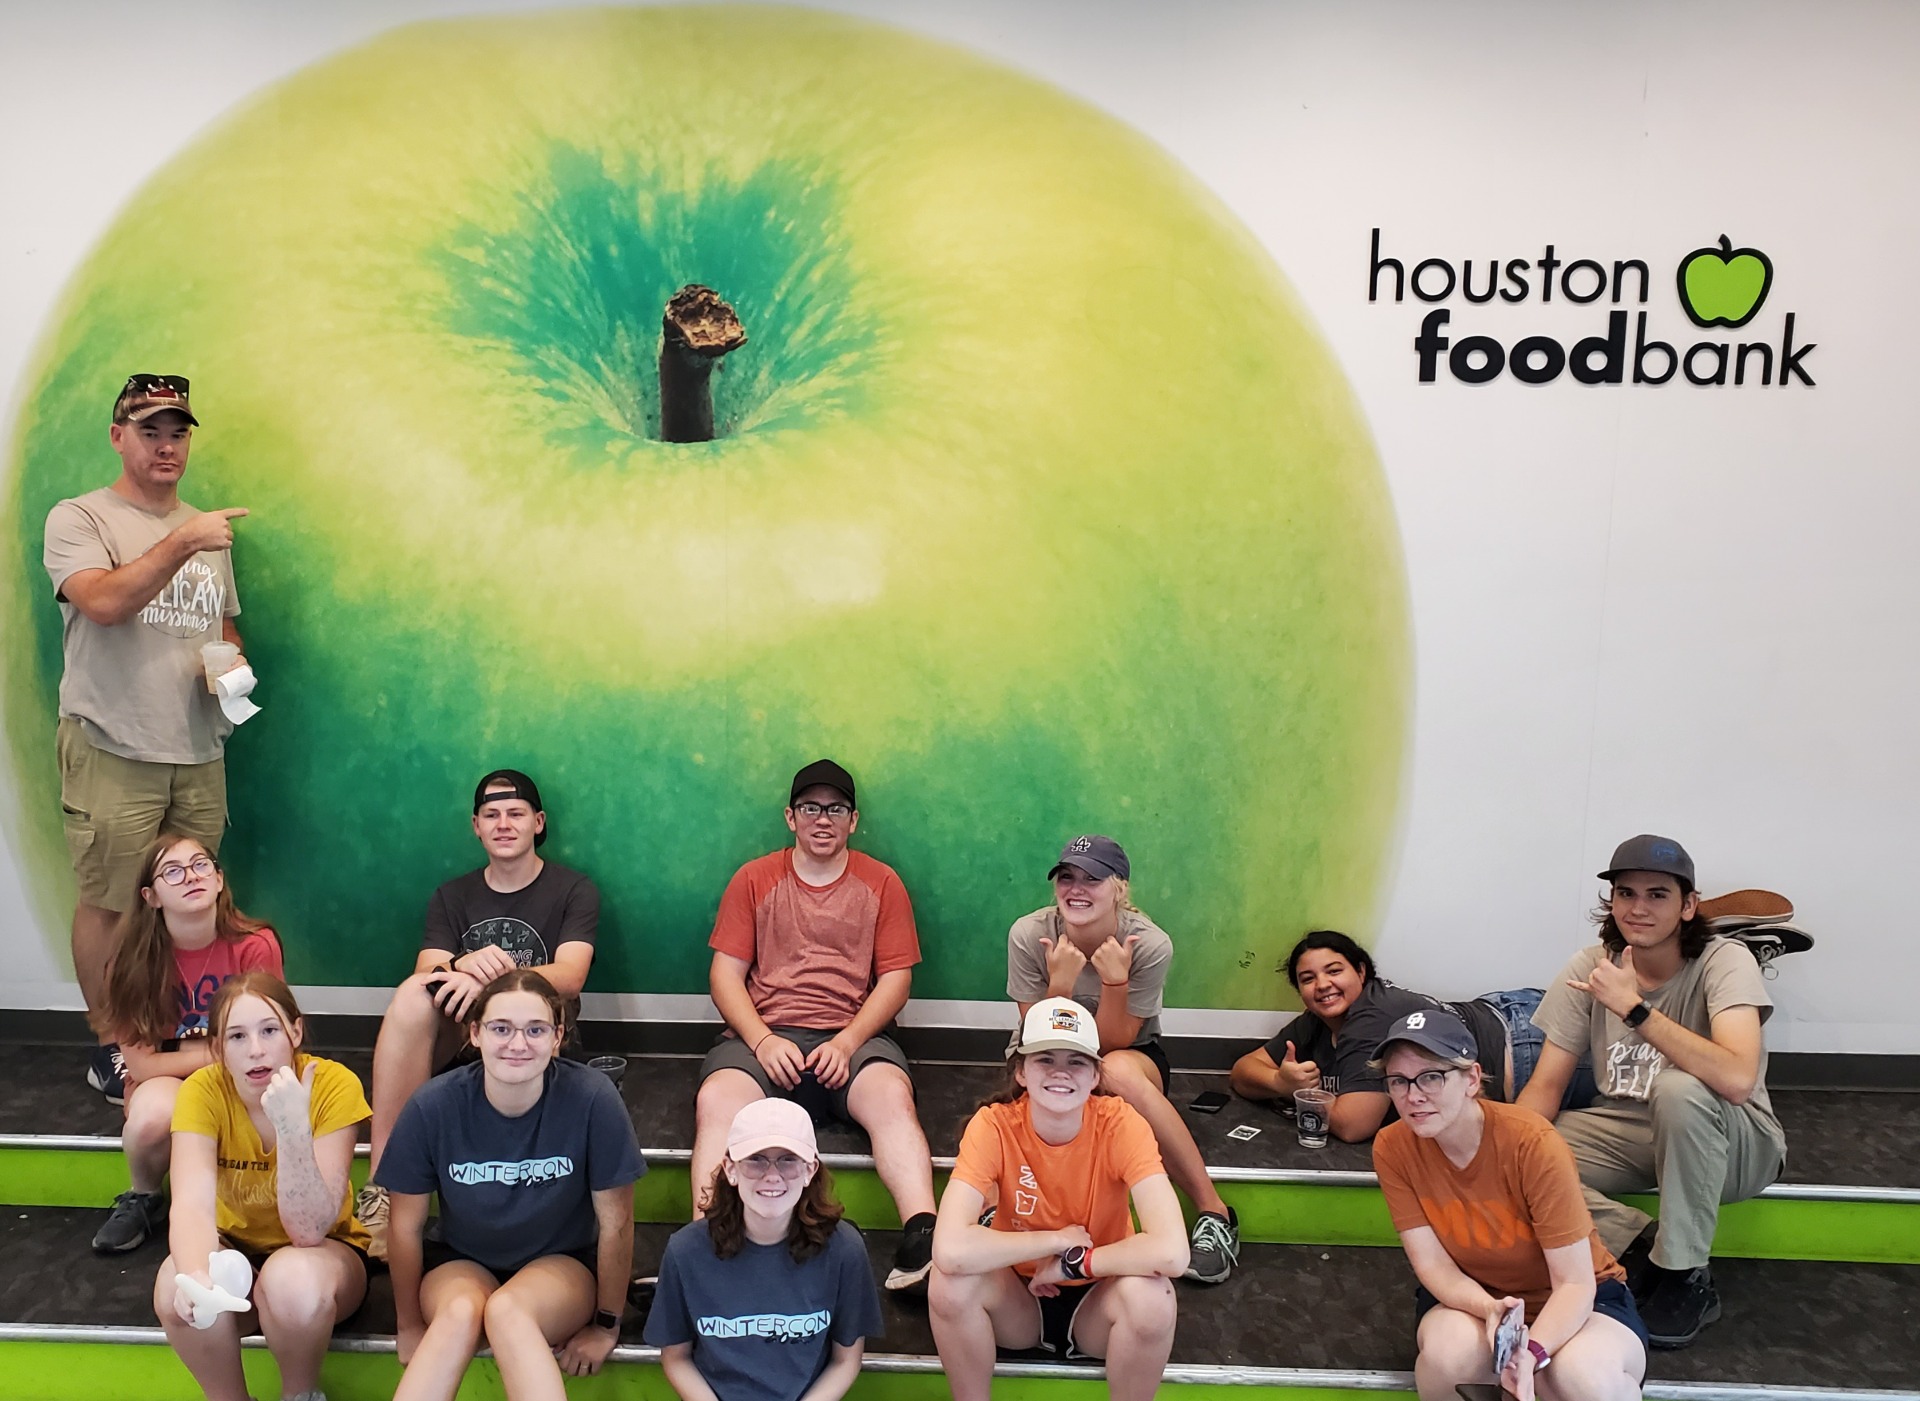 Houston Food Bank